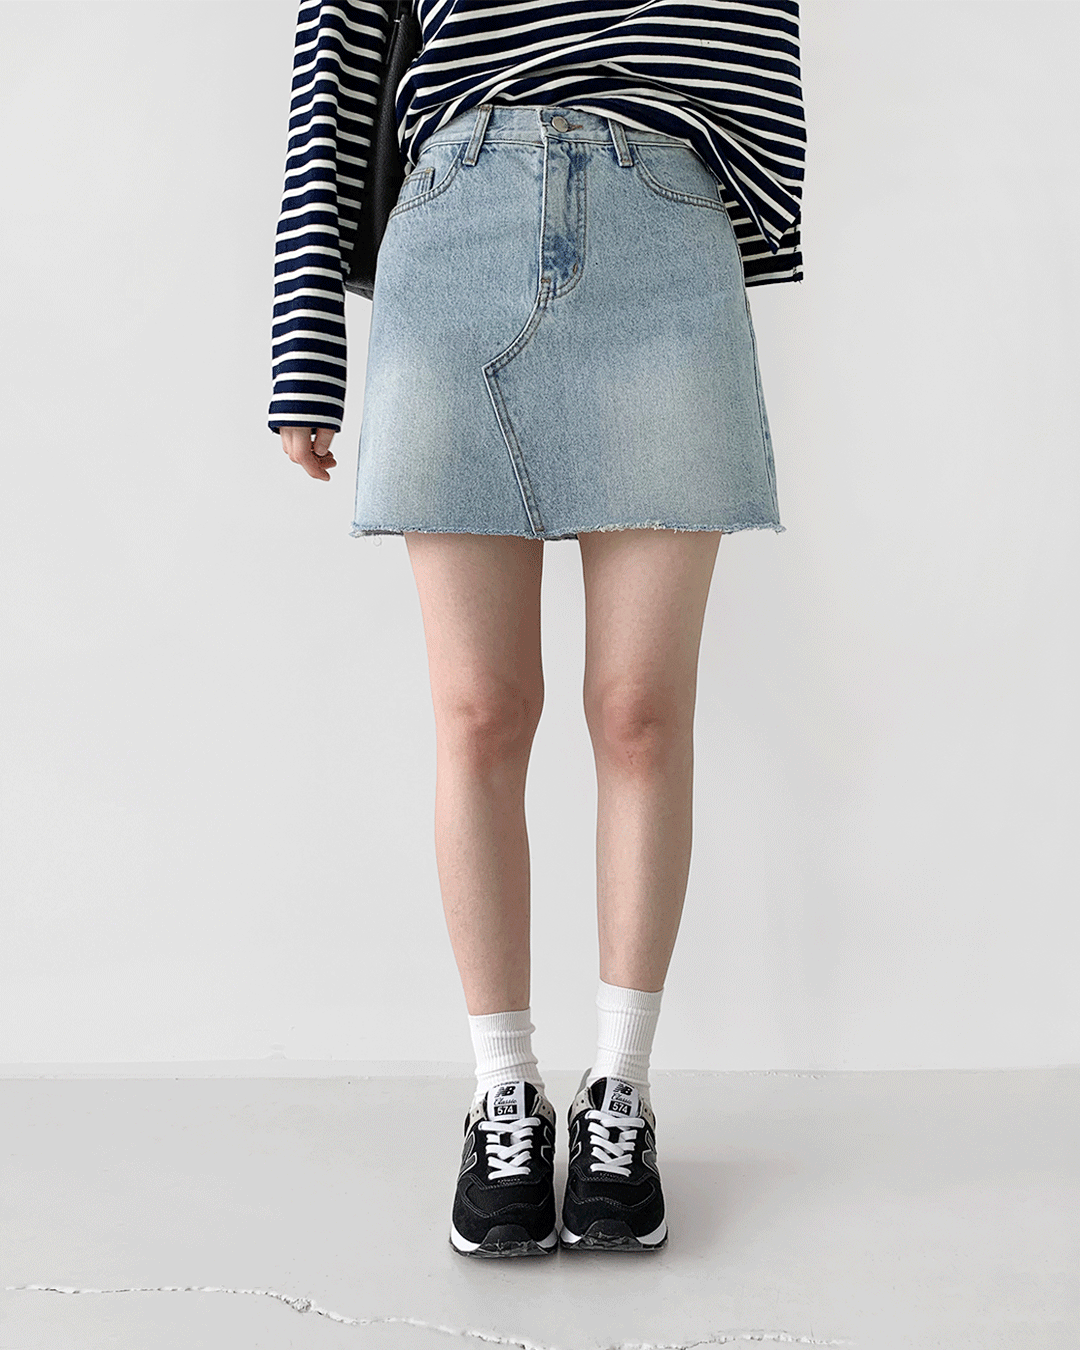 Cut skirt